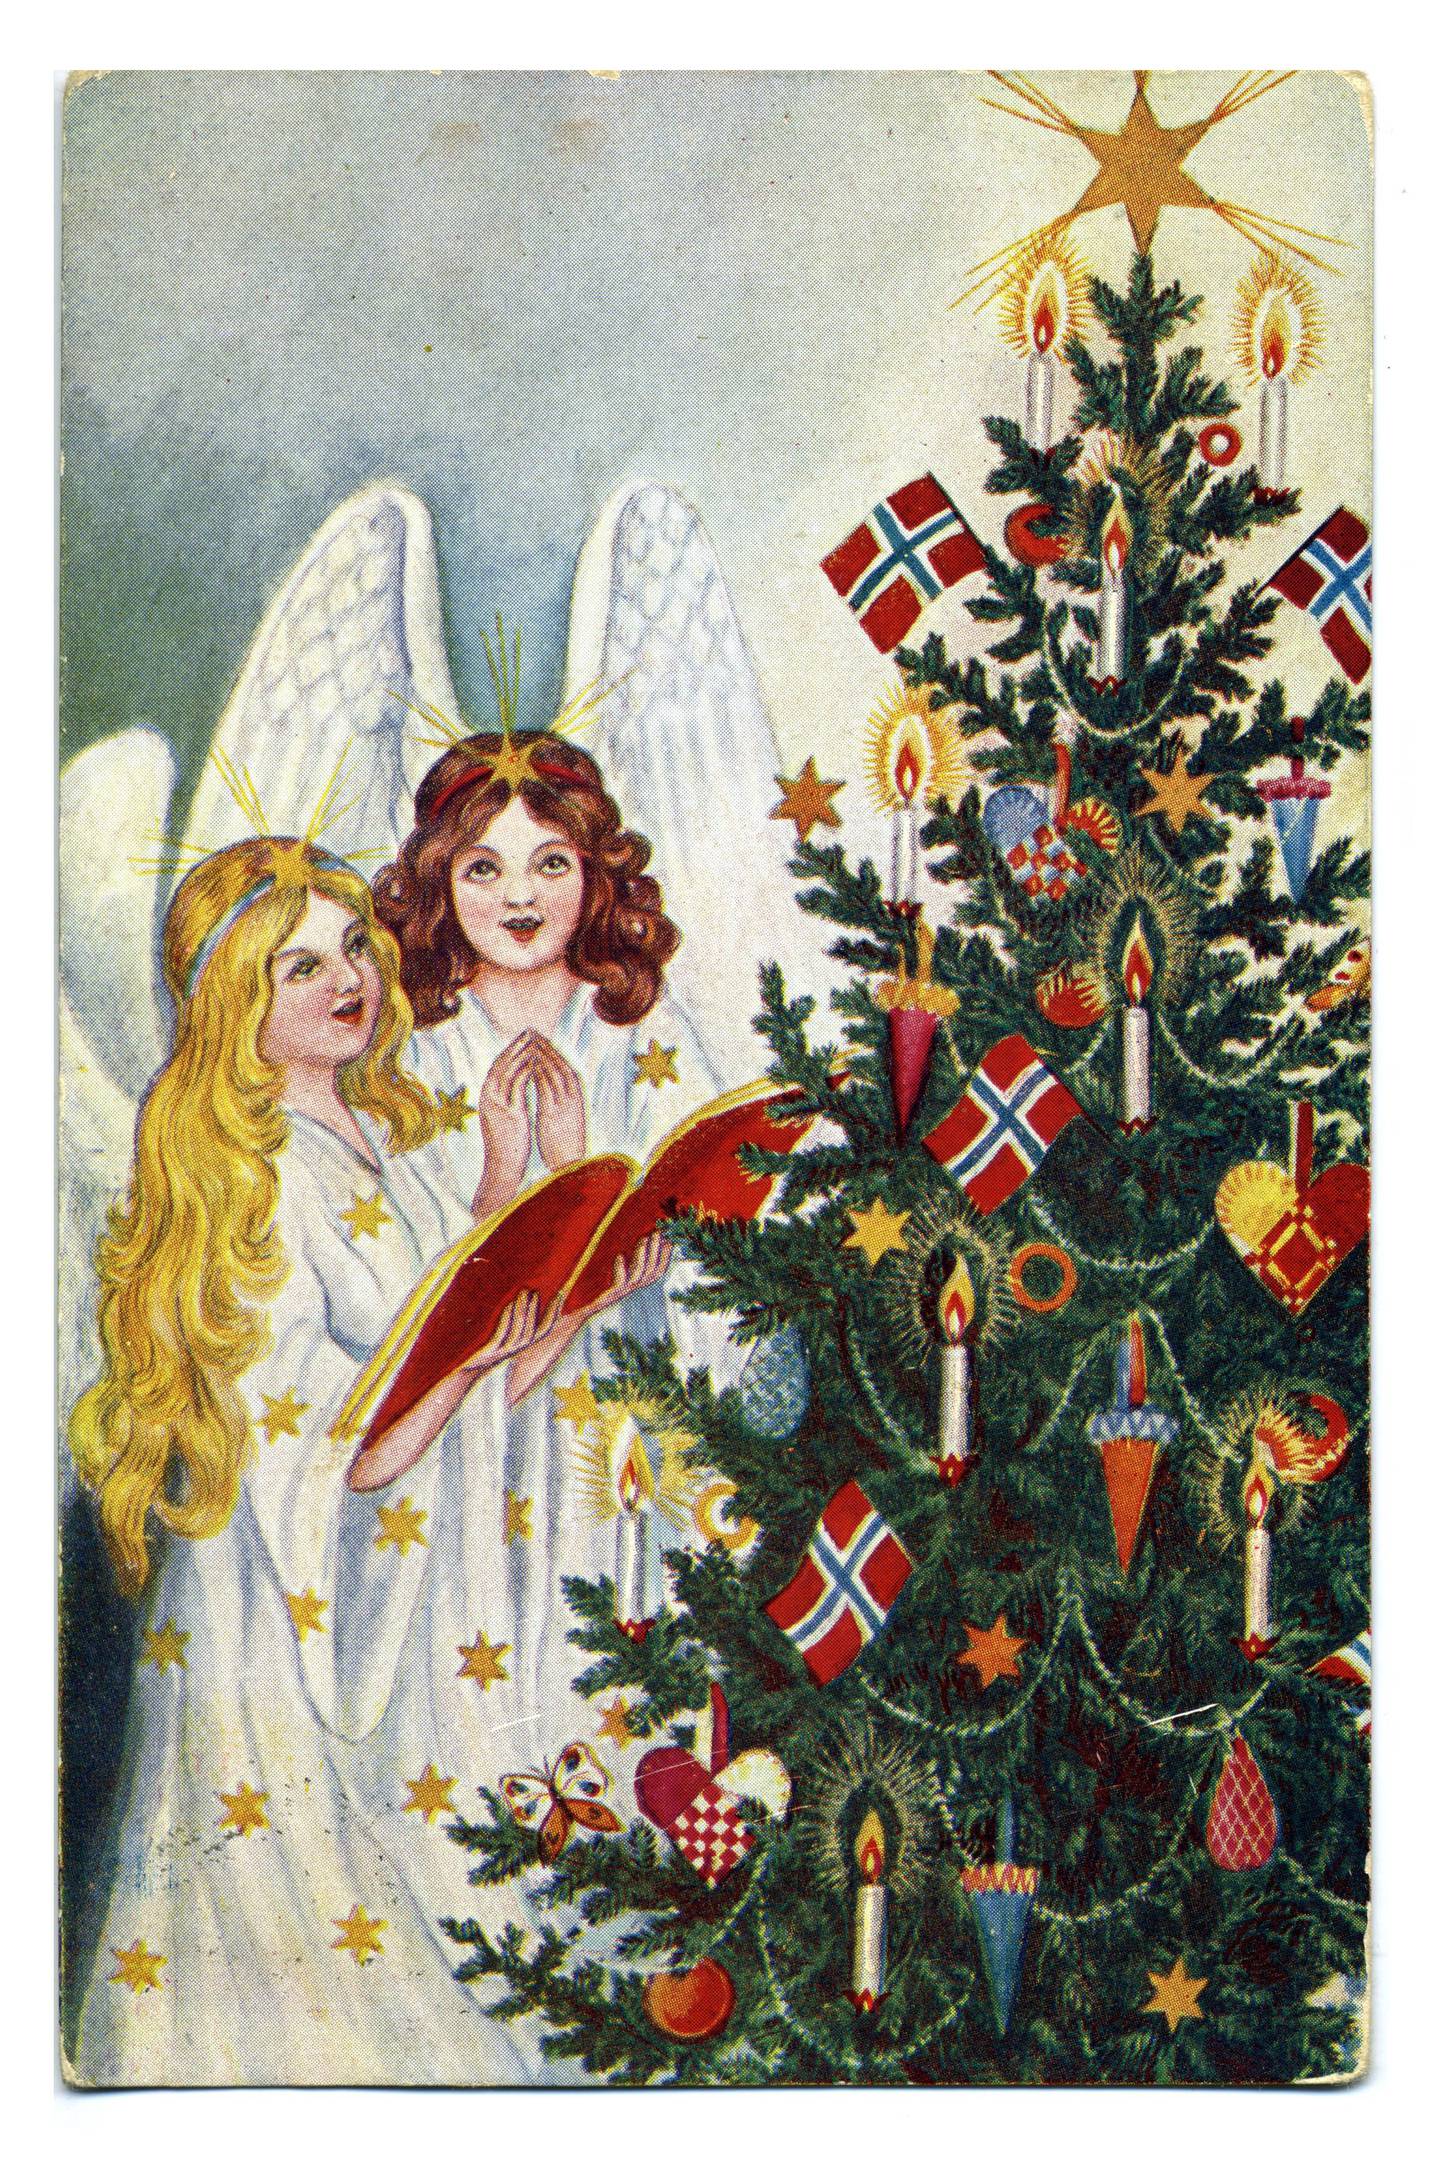 Et julekort fra 1914. Hvilket land kommer skikken fra?